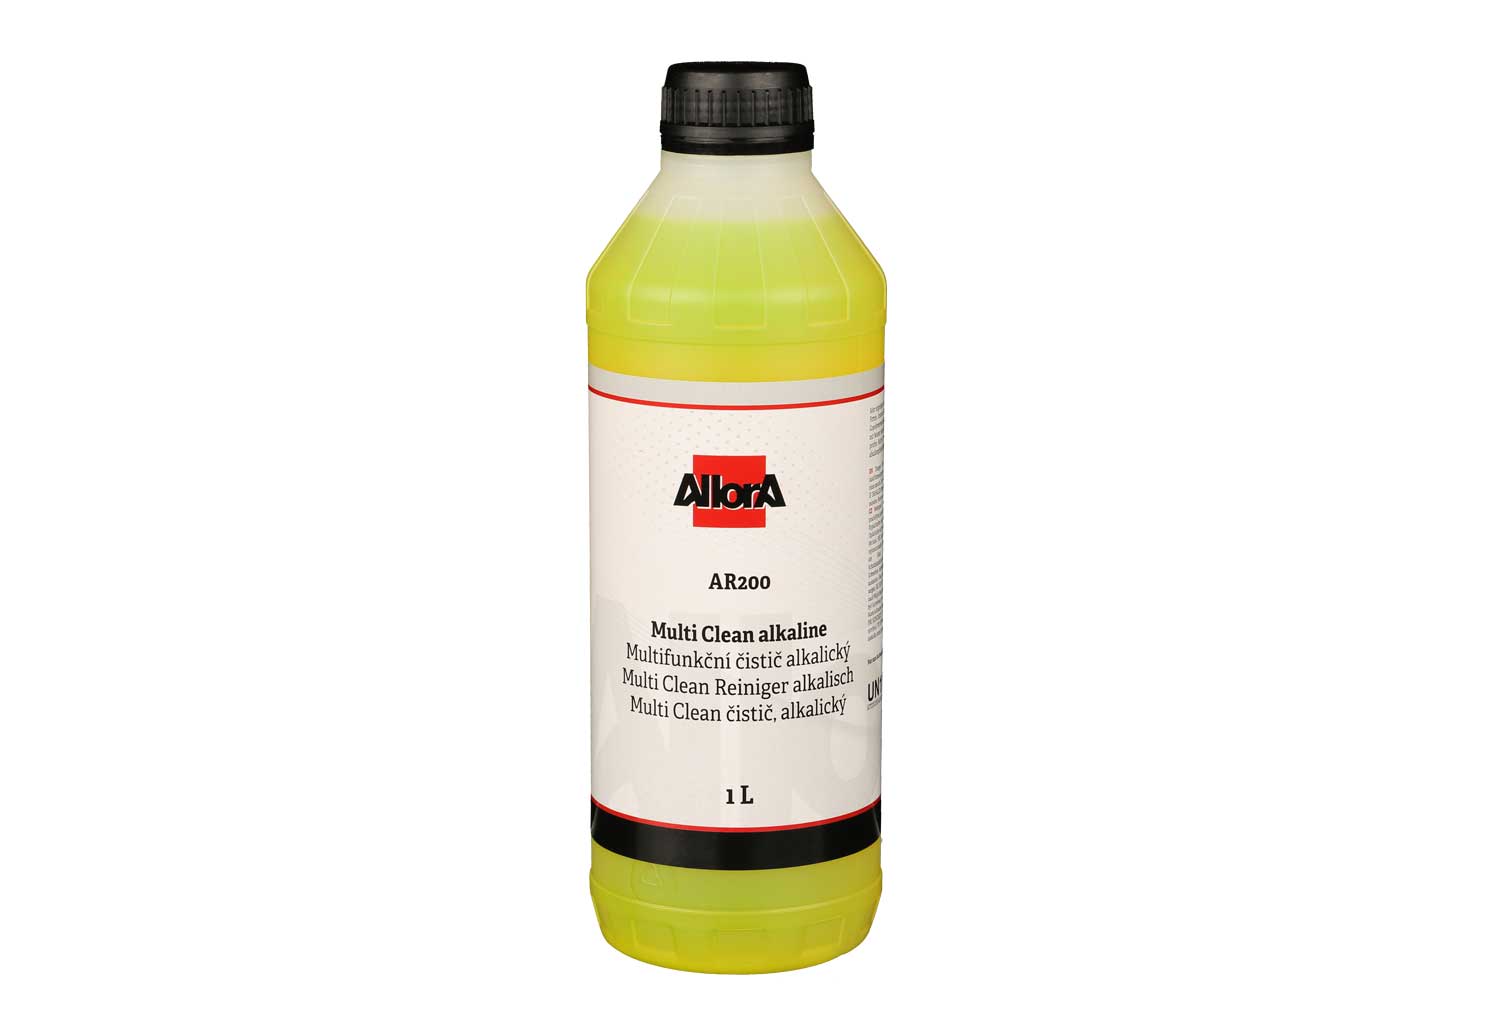 AllorA Multi Clean Reiniger AR200 alkalisch